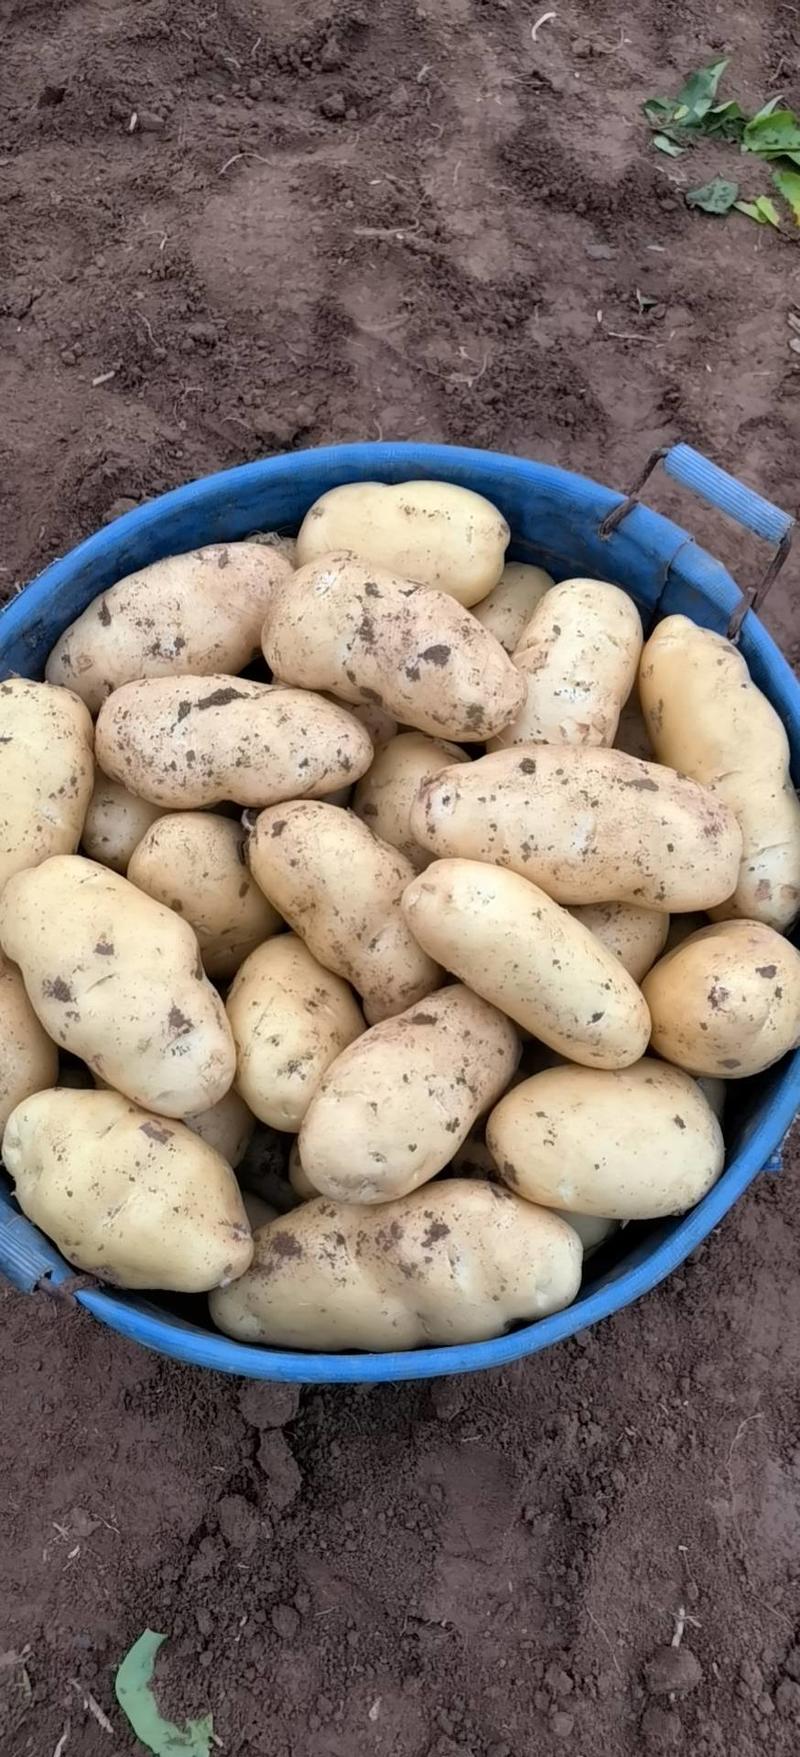 【土豆】优质荷兰十五土豆大量上市产地直发代发全国